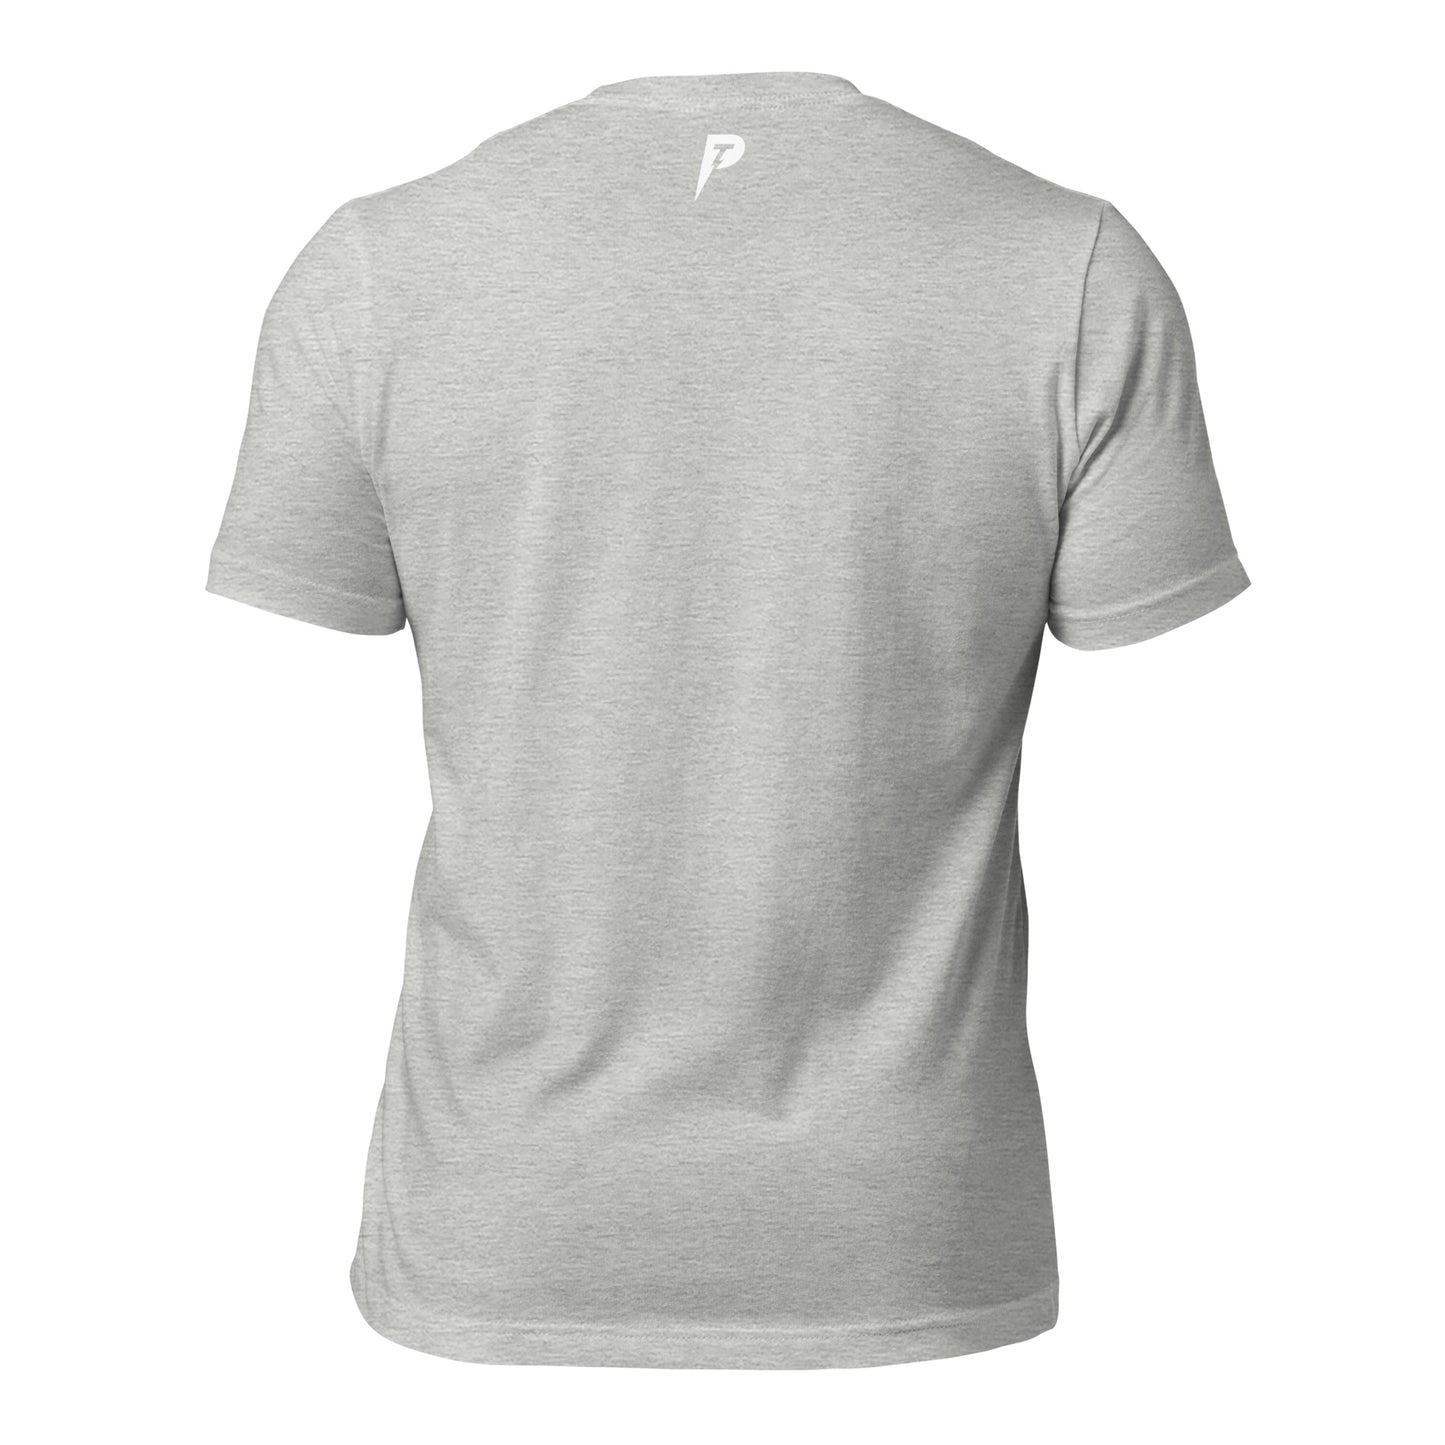 "Shredded" Unisex t-shirt